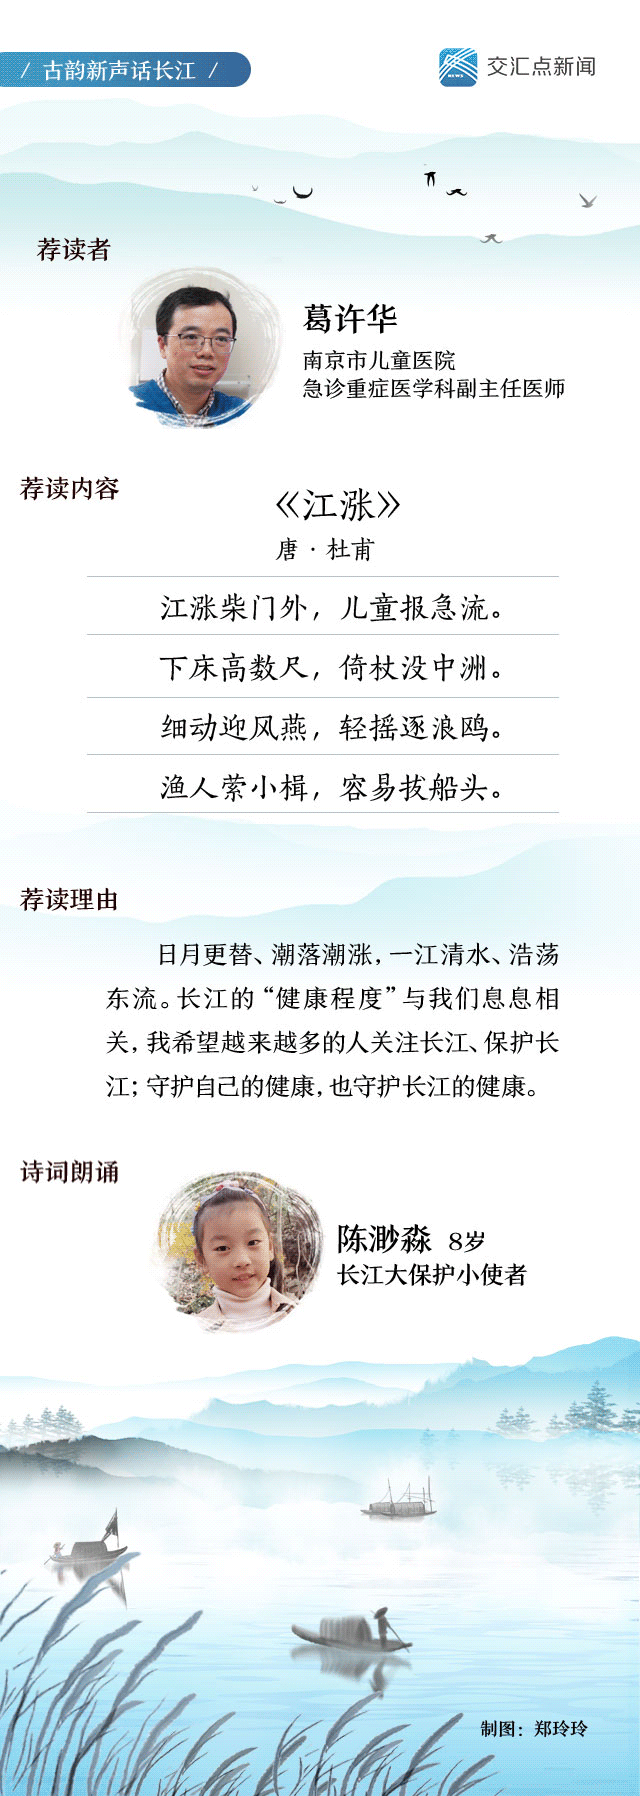 江苏省委|古韵新声话长江 一位儿科医生的新年心愿：守护长江健康